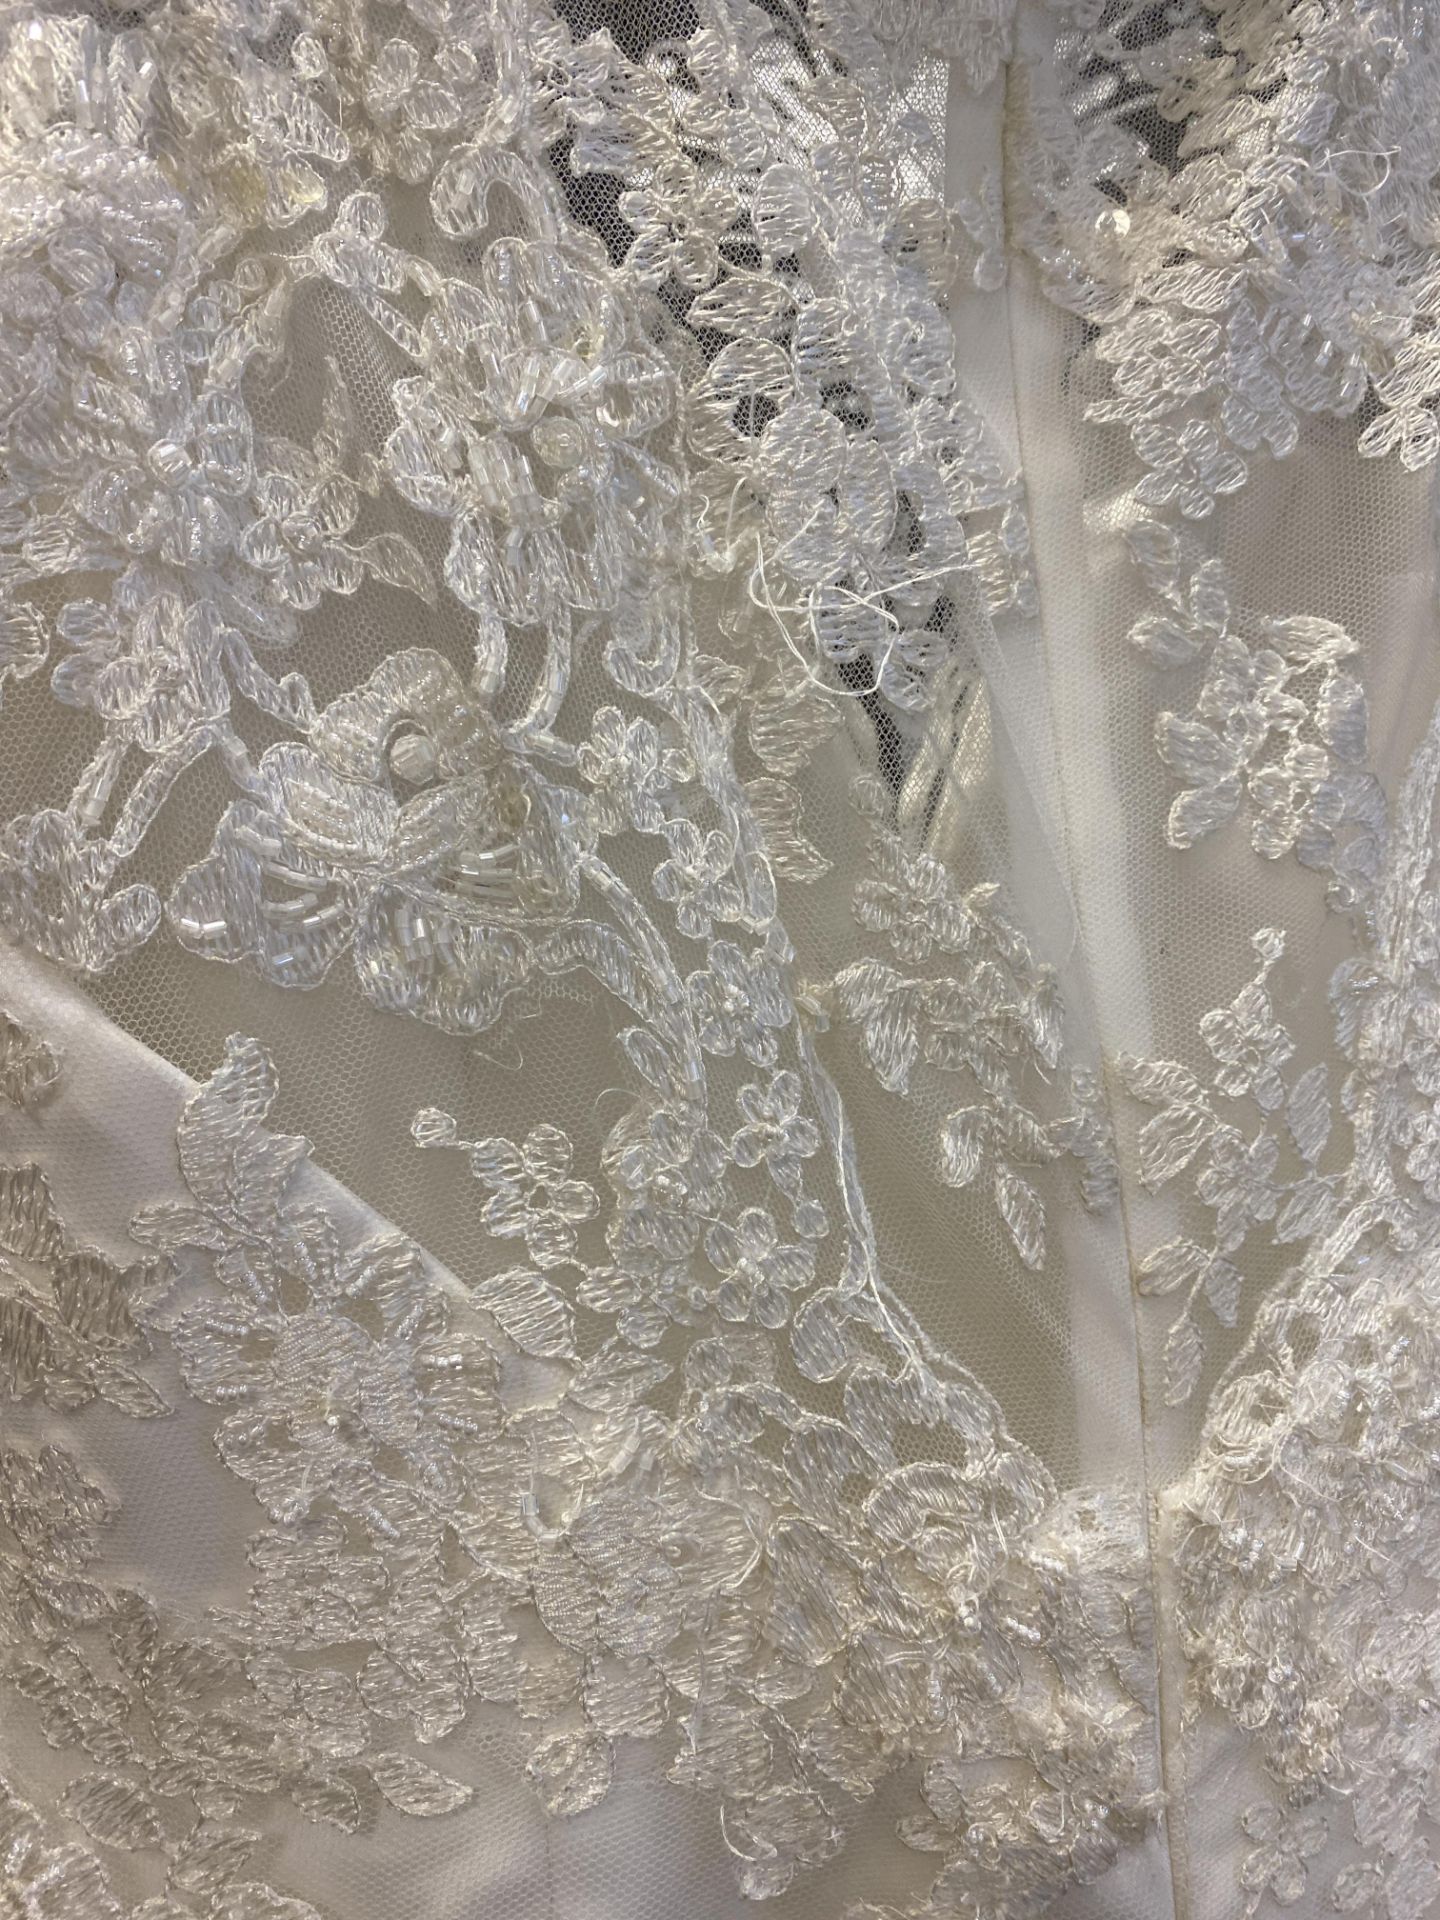 1 x LUSAN MANDONGUS 'Seychelle' Lace Overlay Biased Cut Designer Wedding Dress RRP £1,500 UK10 - Image 5 of 9